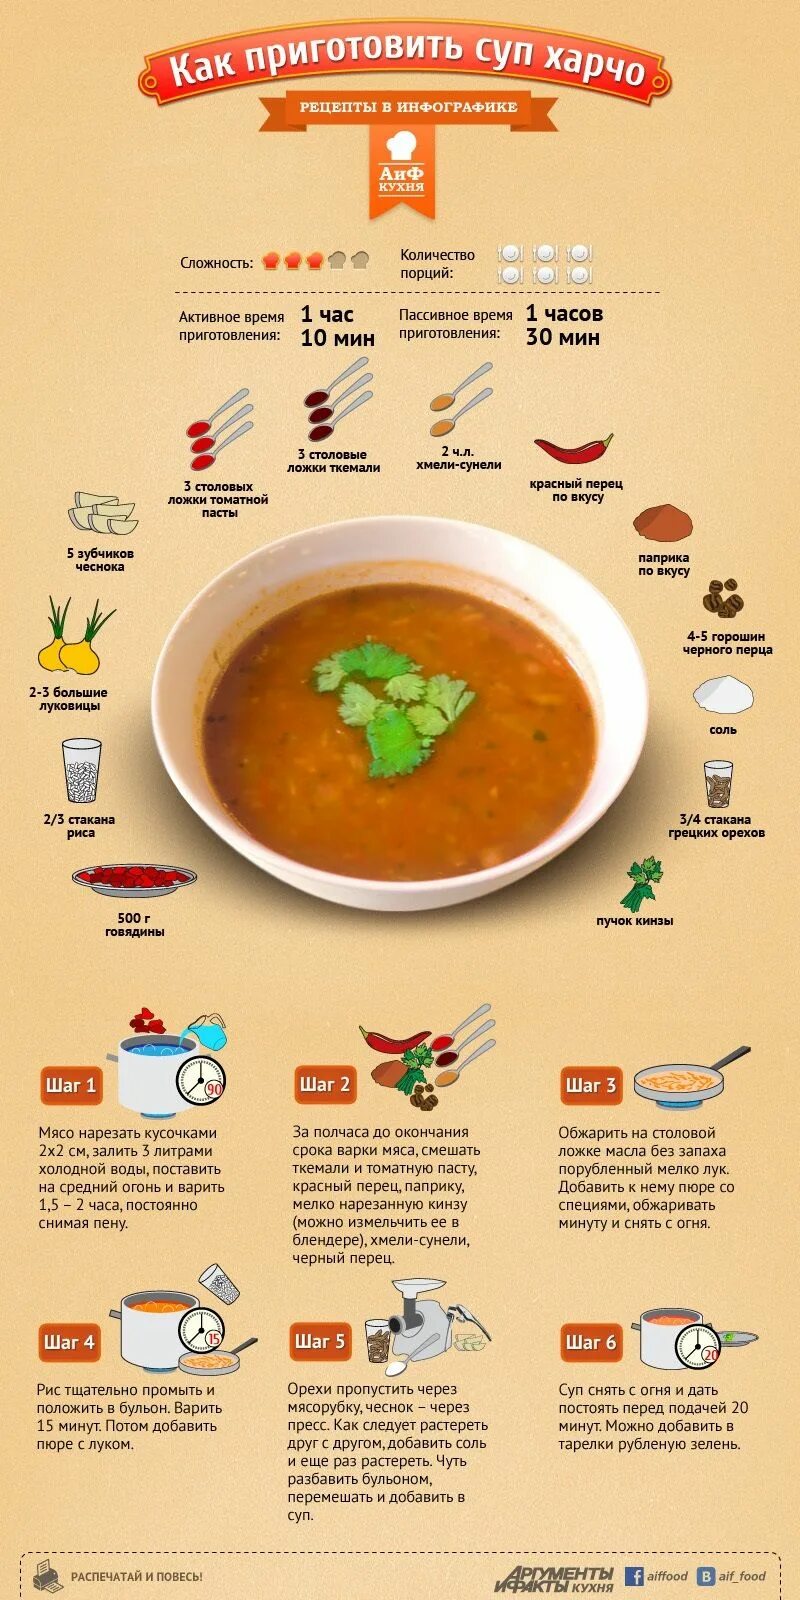 Сколько мяса в порции. Схема приготовления супа харчо. Рецептура супа харчо. Инфографика суп. Рецепты в картинках.